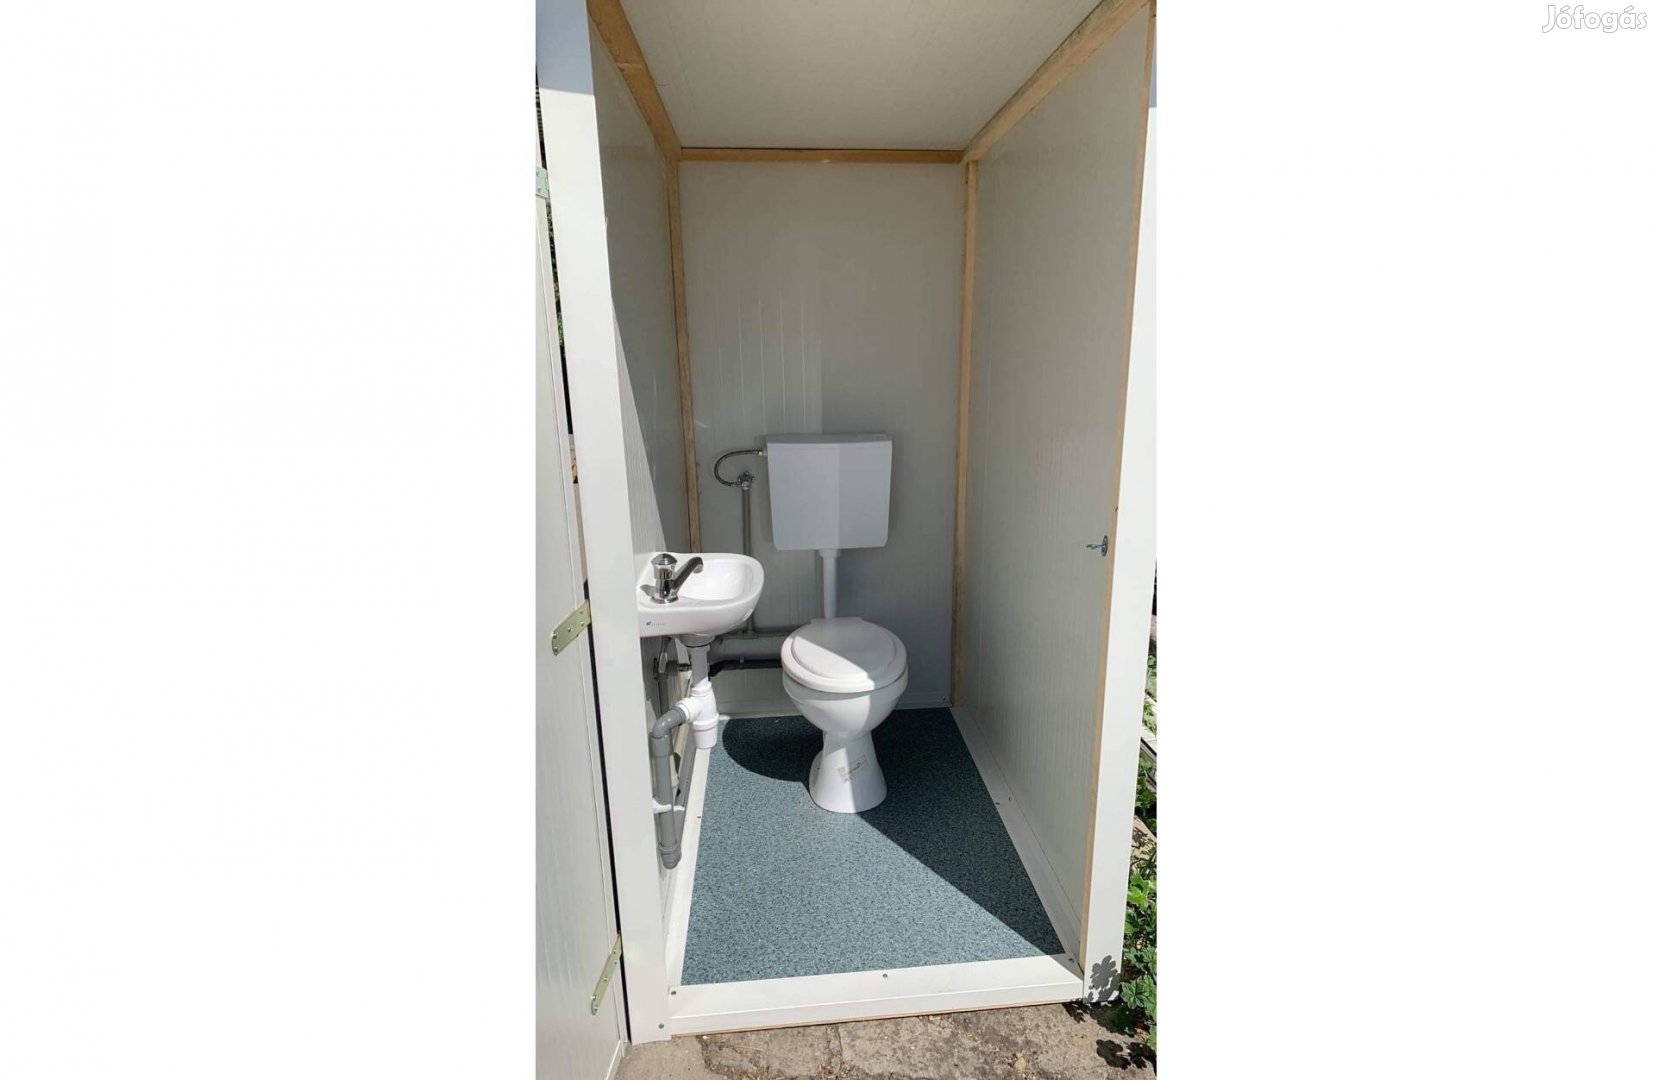 Angol WC., vízöblítéses kert WC, kinti WC, szaniter konténer